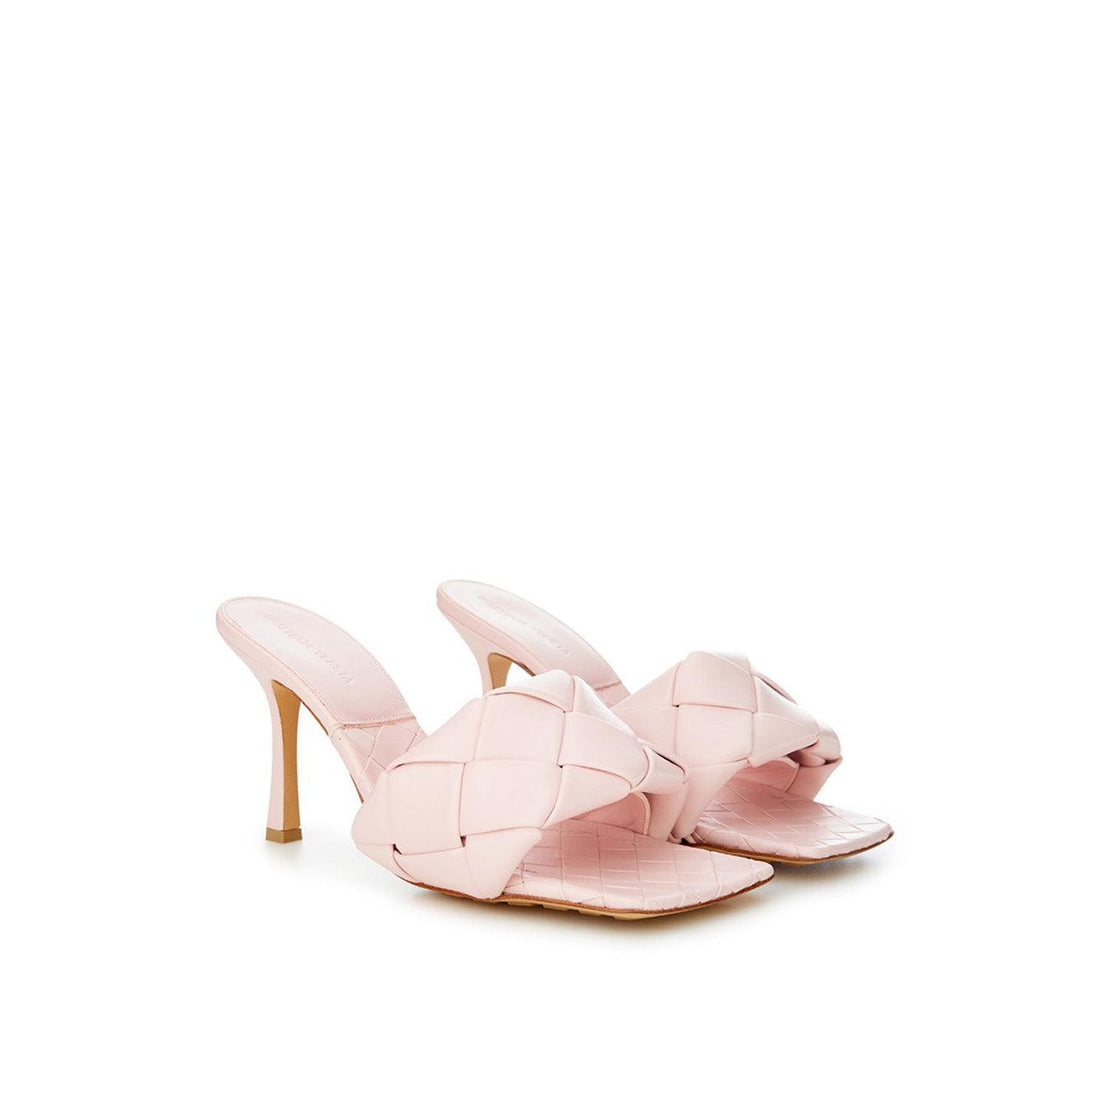 Bottega Veneta Light Pink Leather Heeled Sandal Mule with Intreccio